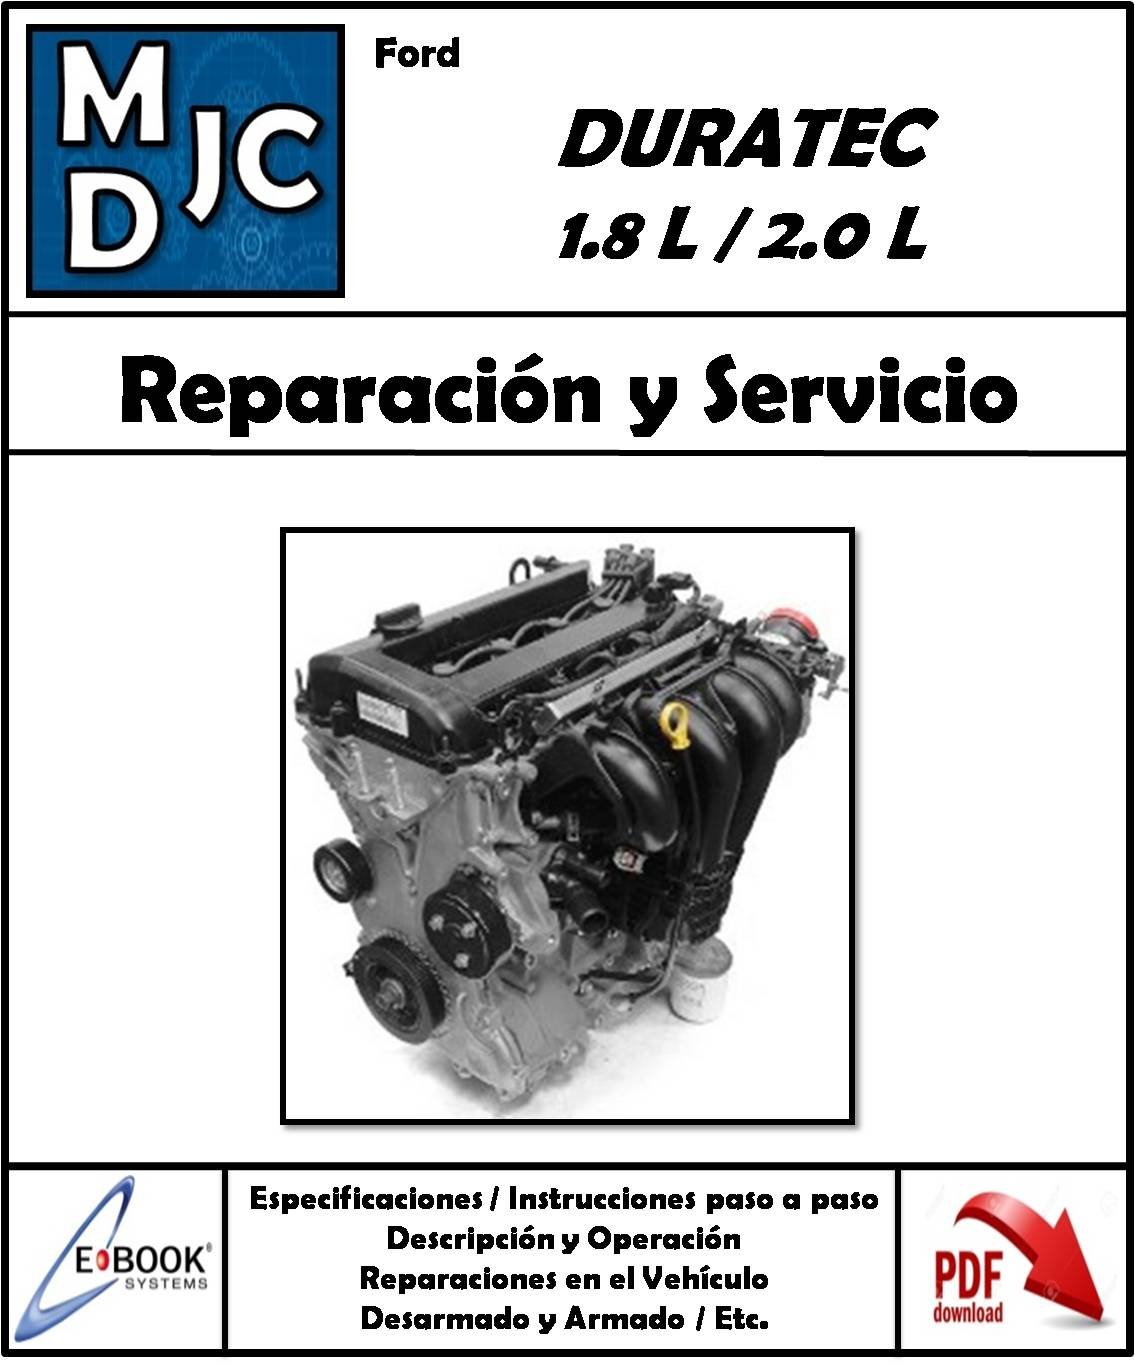 Ford Motores  1.8 L  /  2.0 L  Duratec